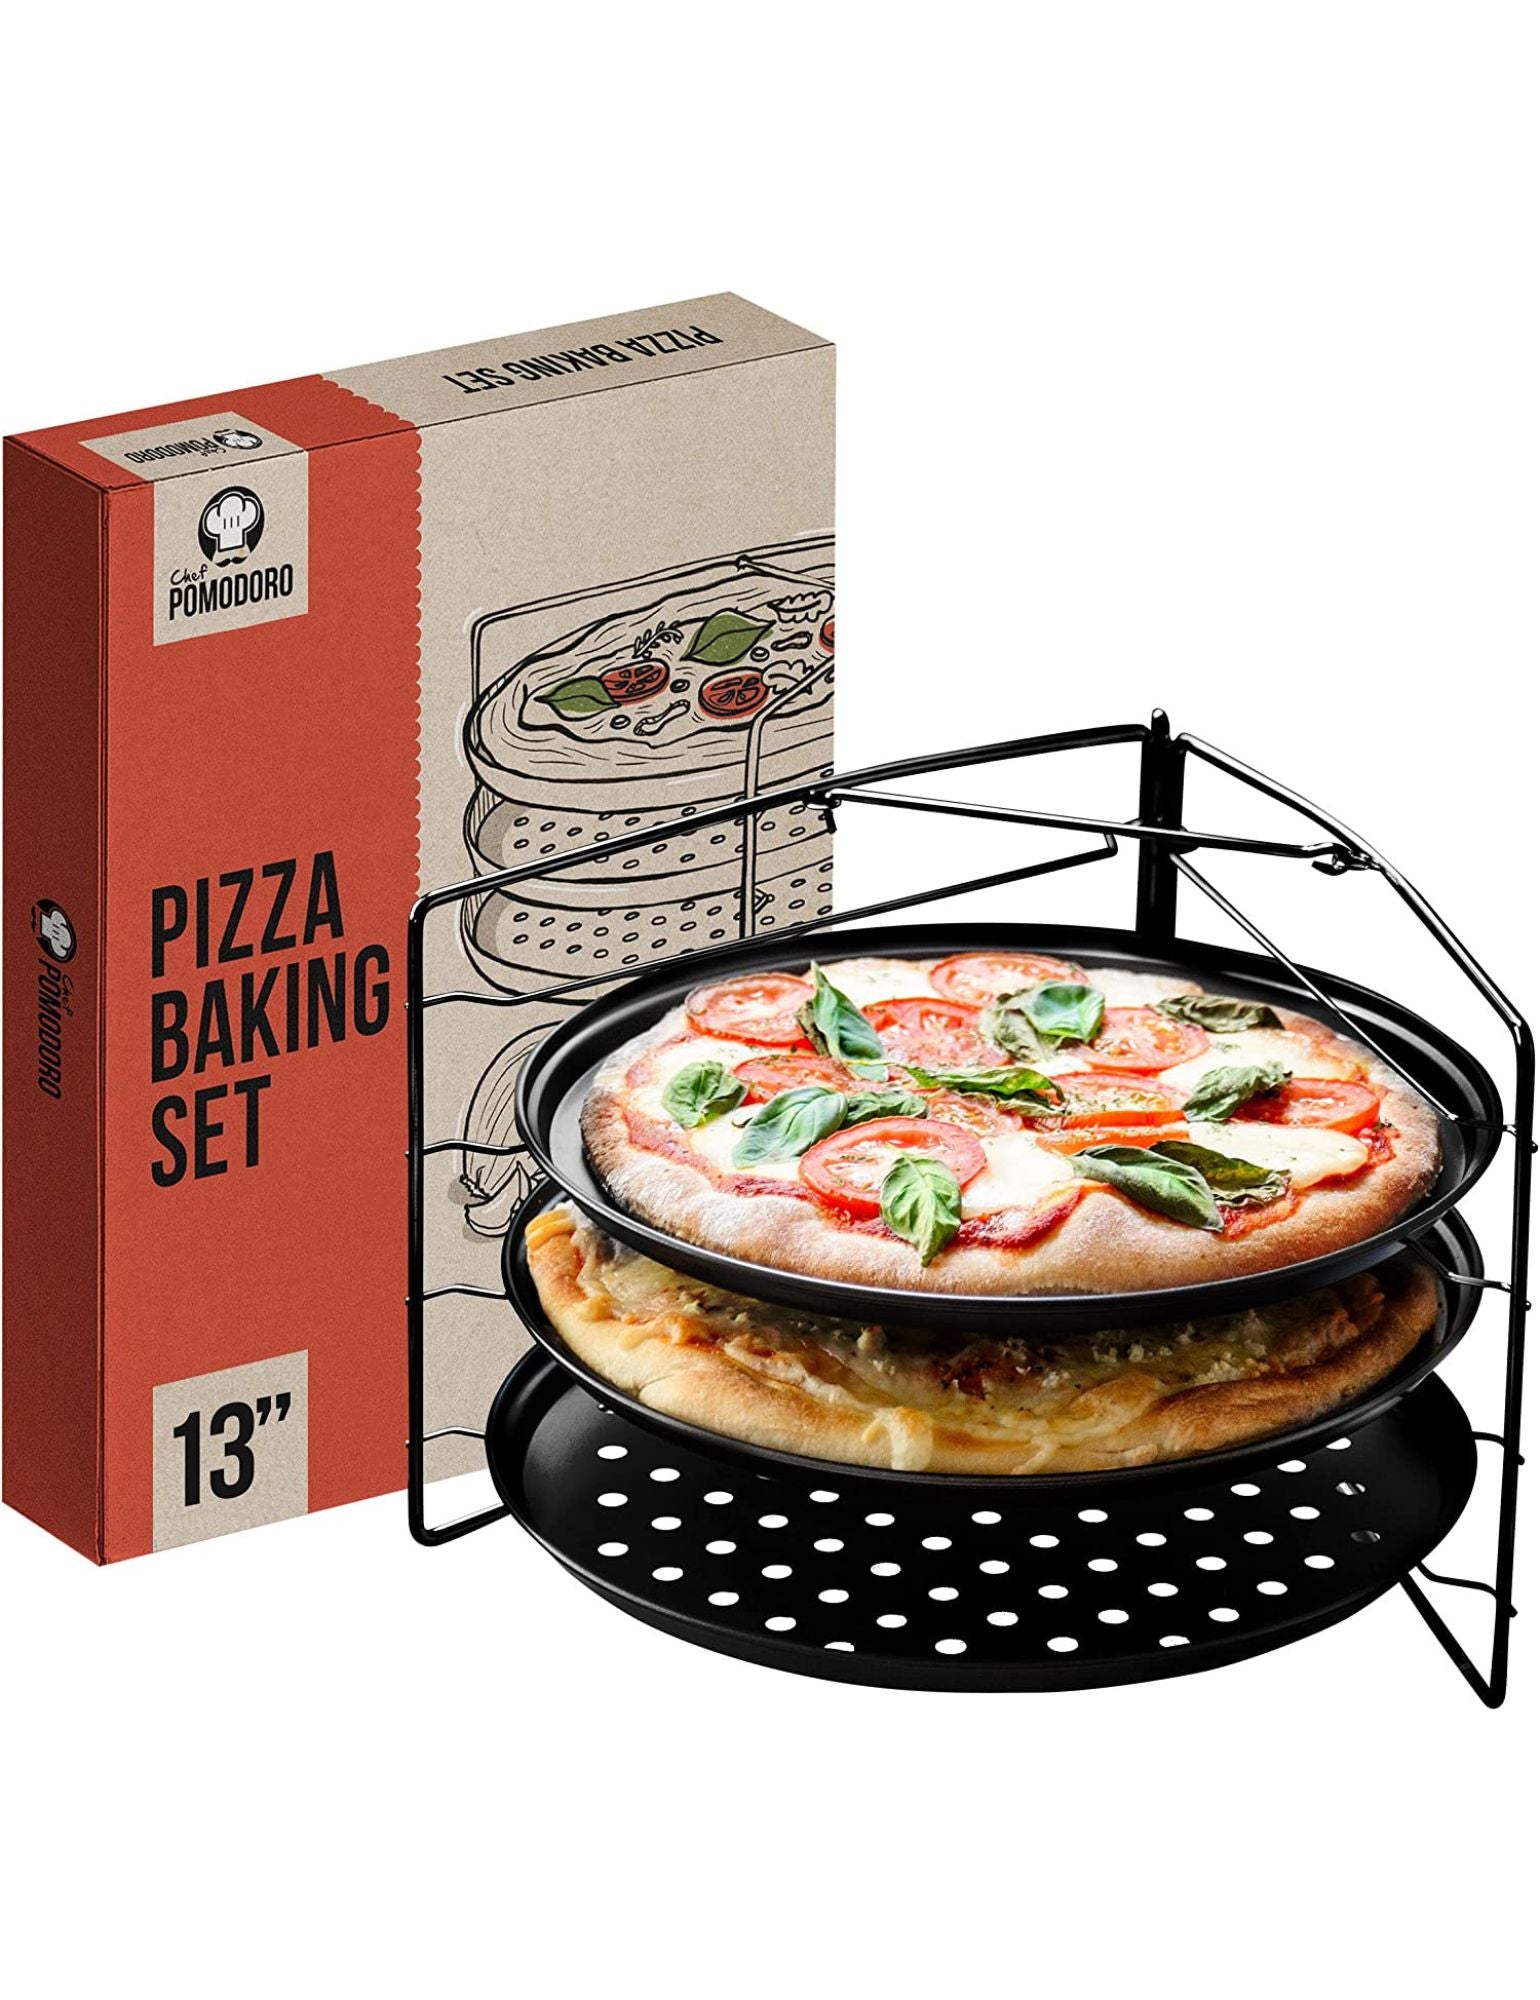 All Pizza Making Essentials – Chef Pomodoro